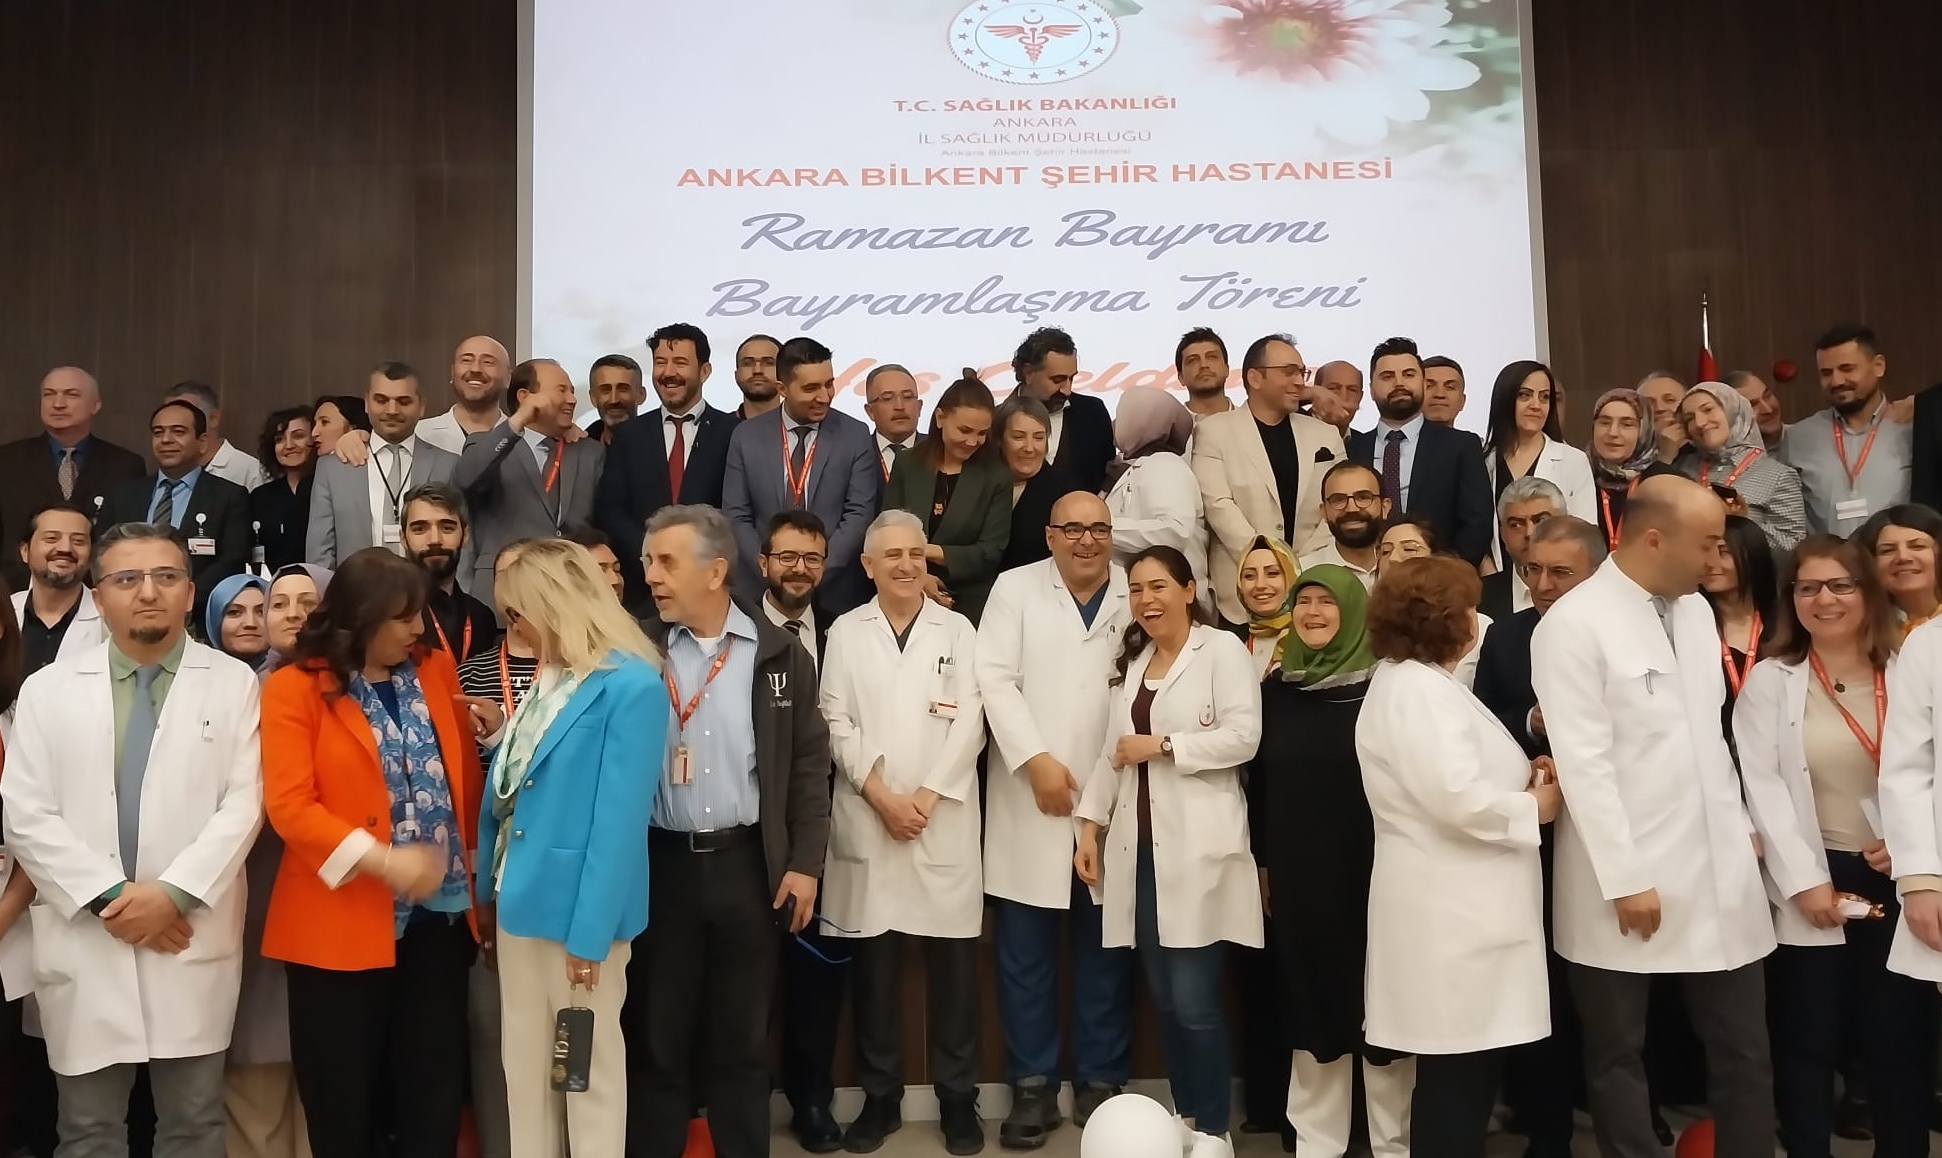 Ankara Bilkent Şehir Hastanesi'nde Geleneksel Bayramlaşma Töreni (3)